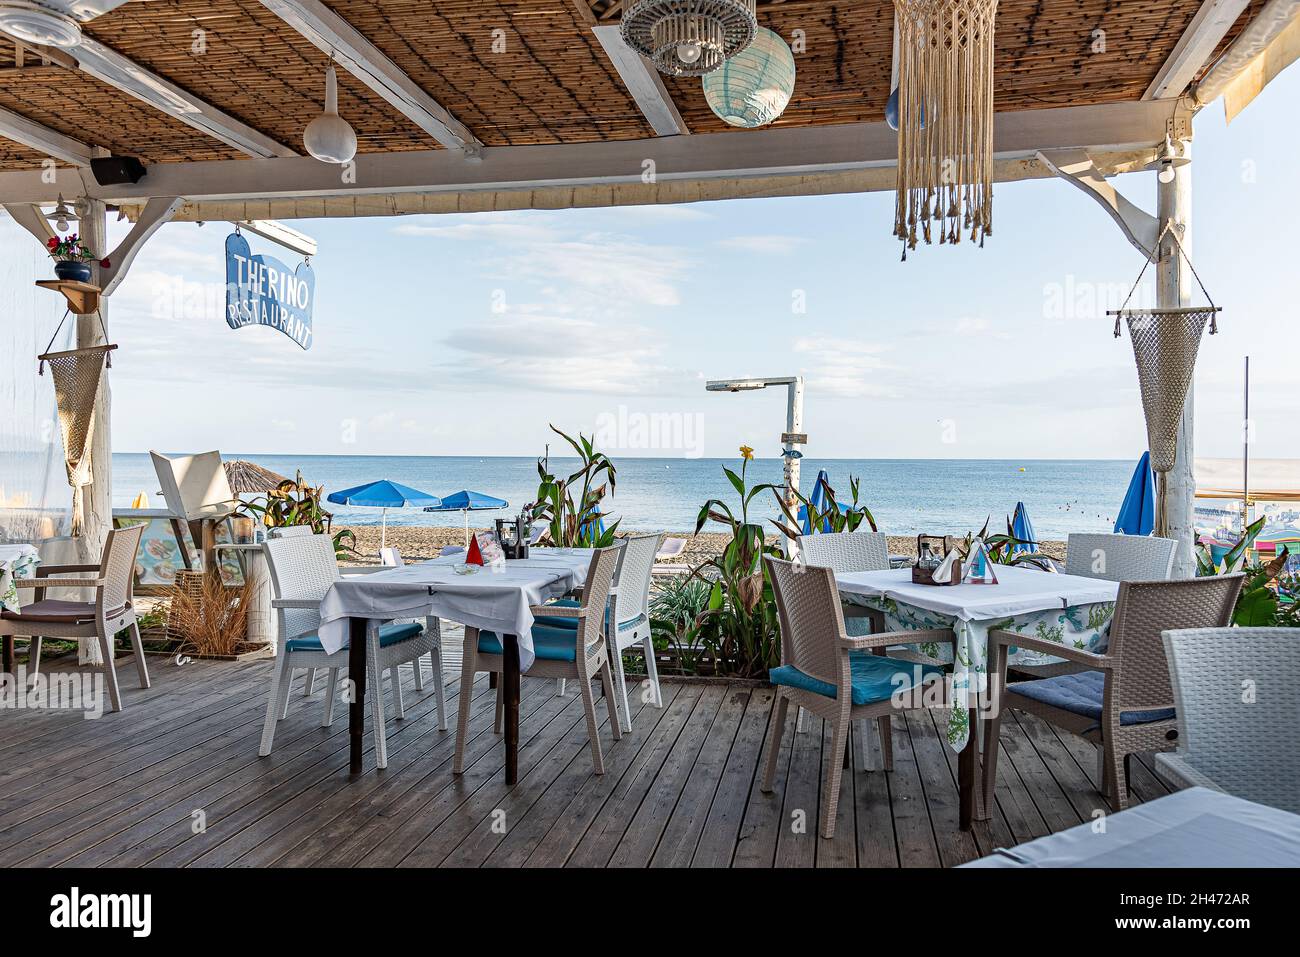 Therino griechisches blau-weißes Restaurant am Strand von Platanias, Platanias, Kreta, Griechenland, Oktober 7, 2021 Stockfoto